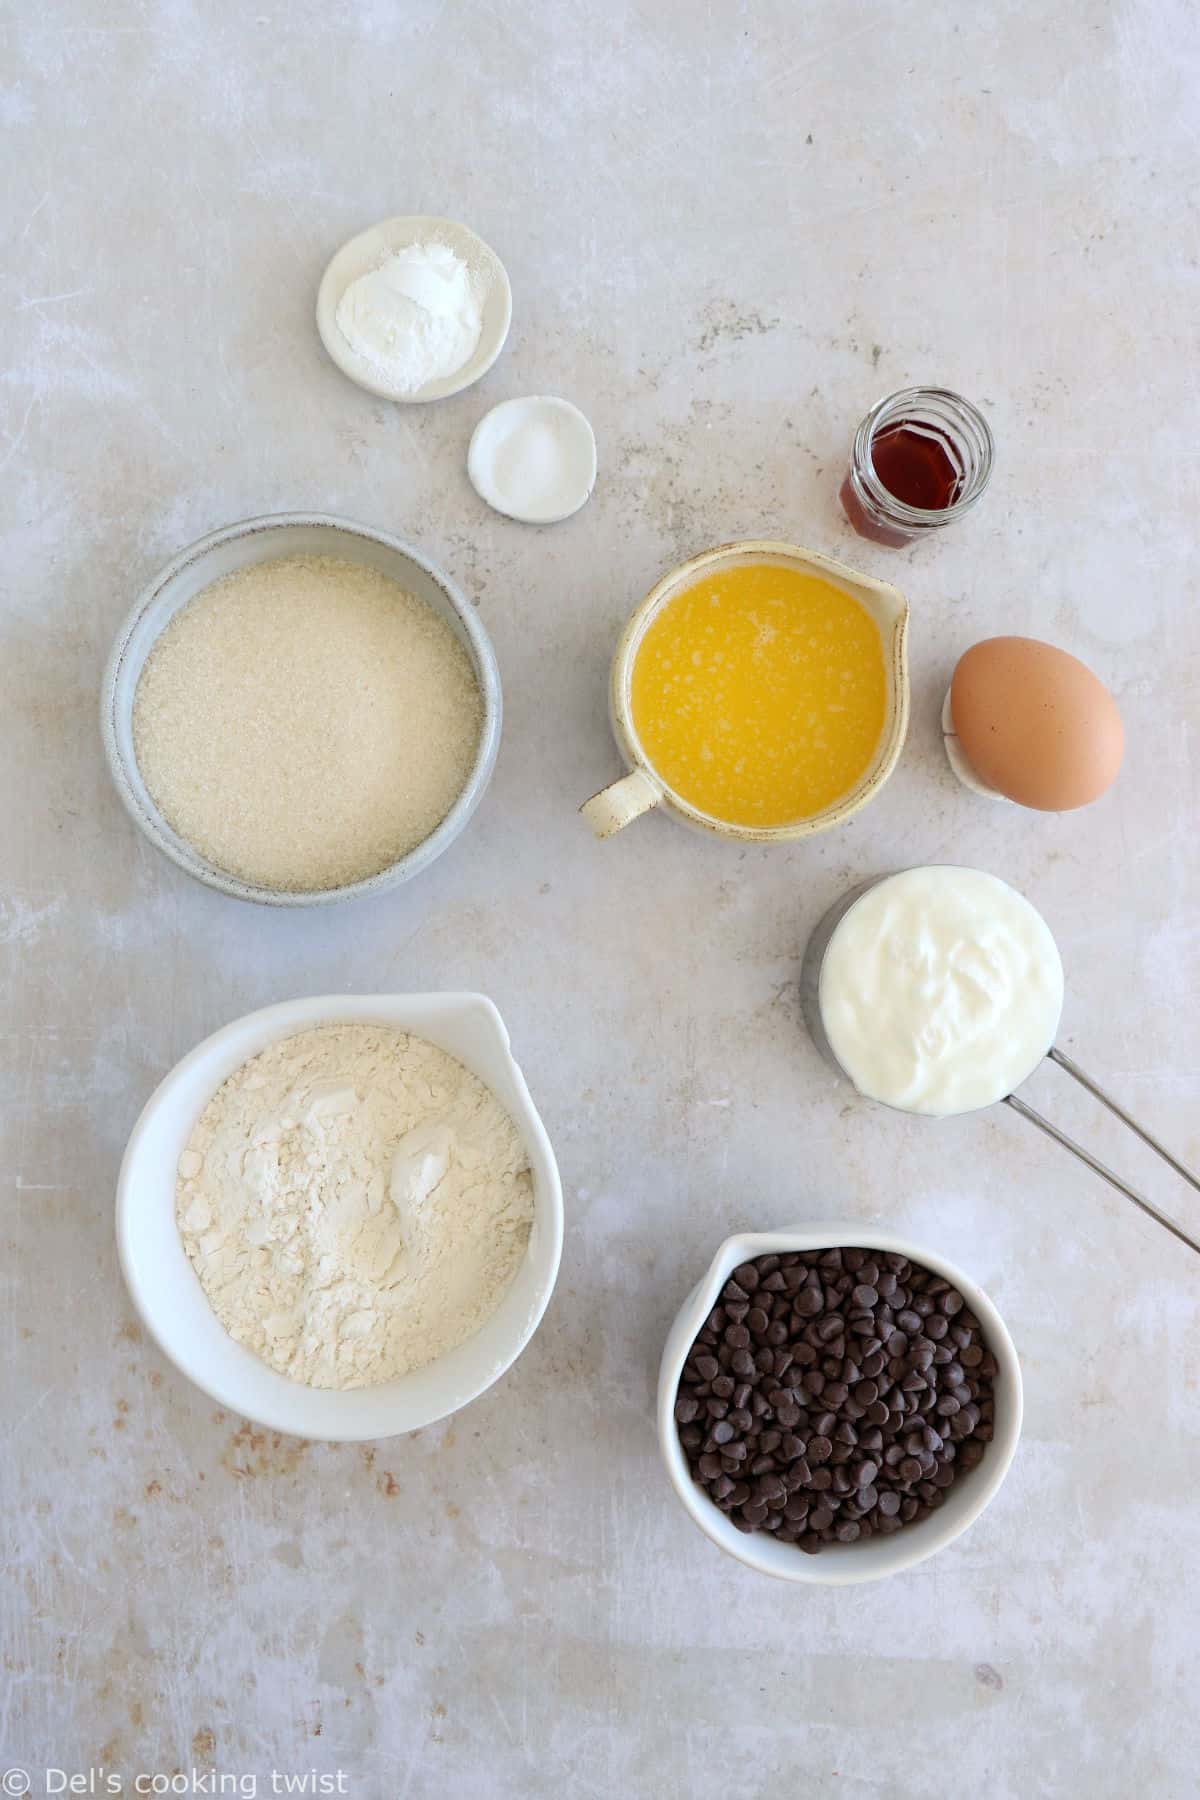 Ces muffins aux pépites de chocolat sont tendres, moelleux et garnis de mini pépites de chocolat. Une idée parfaite pour le goûter.